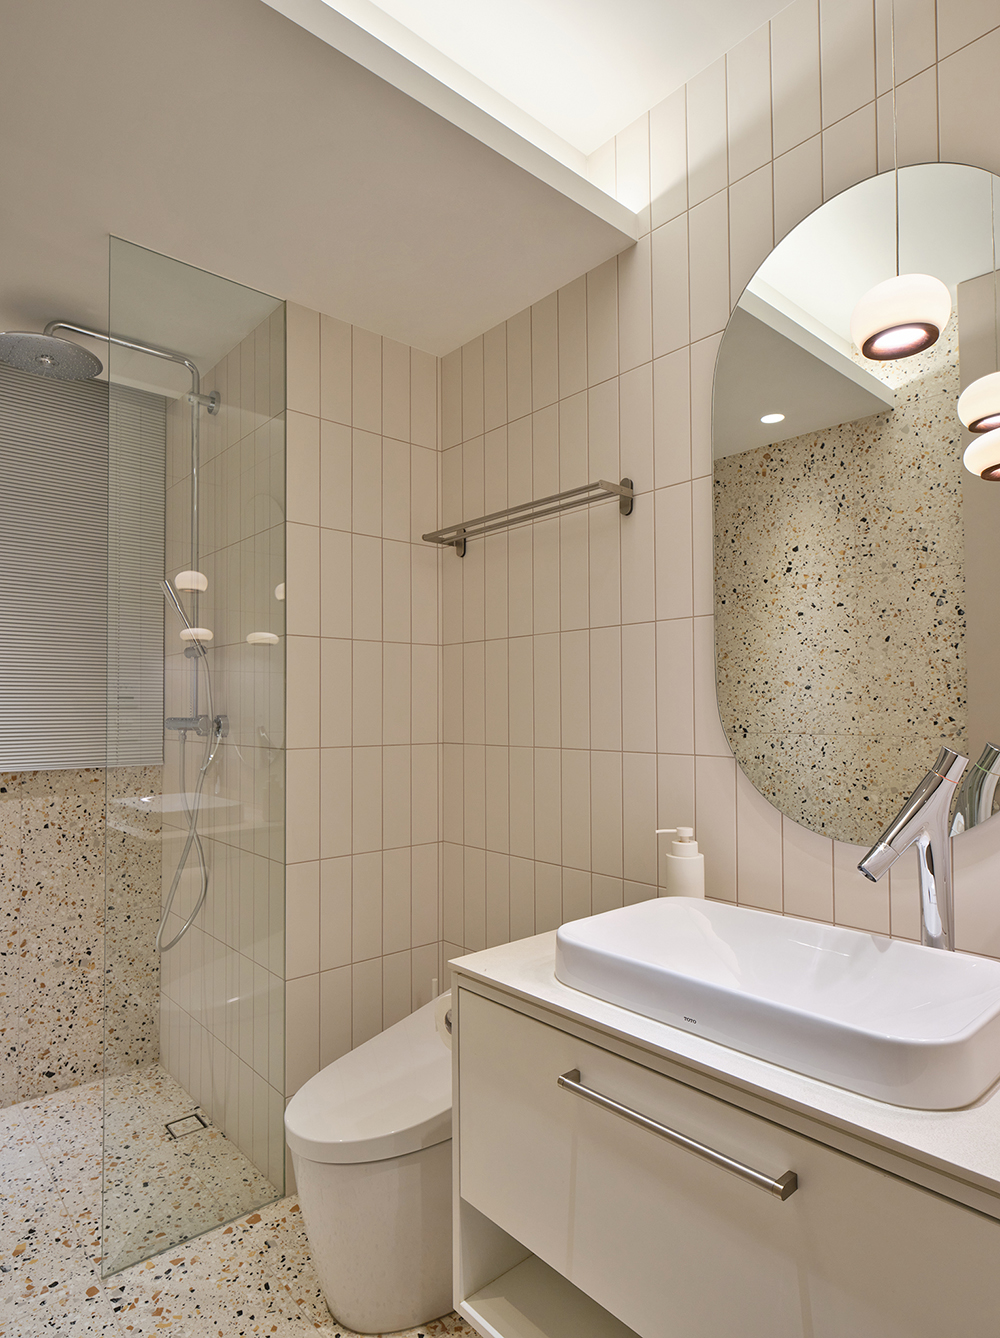 Phòng tắm và nhà vệ sinh cho khách sử dụng tone màu trắng - be chủ đạo, phân vùng bằng vách ngăn kính trong suốt cùng gạch ốp lát họa tiết terrazzo sinh động.